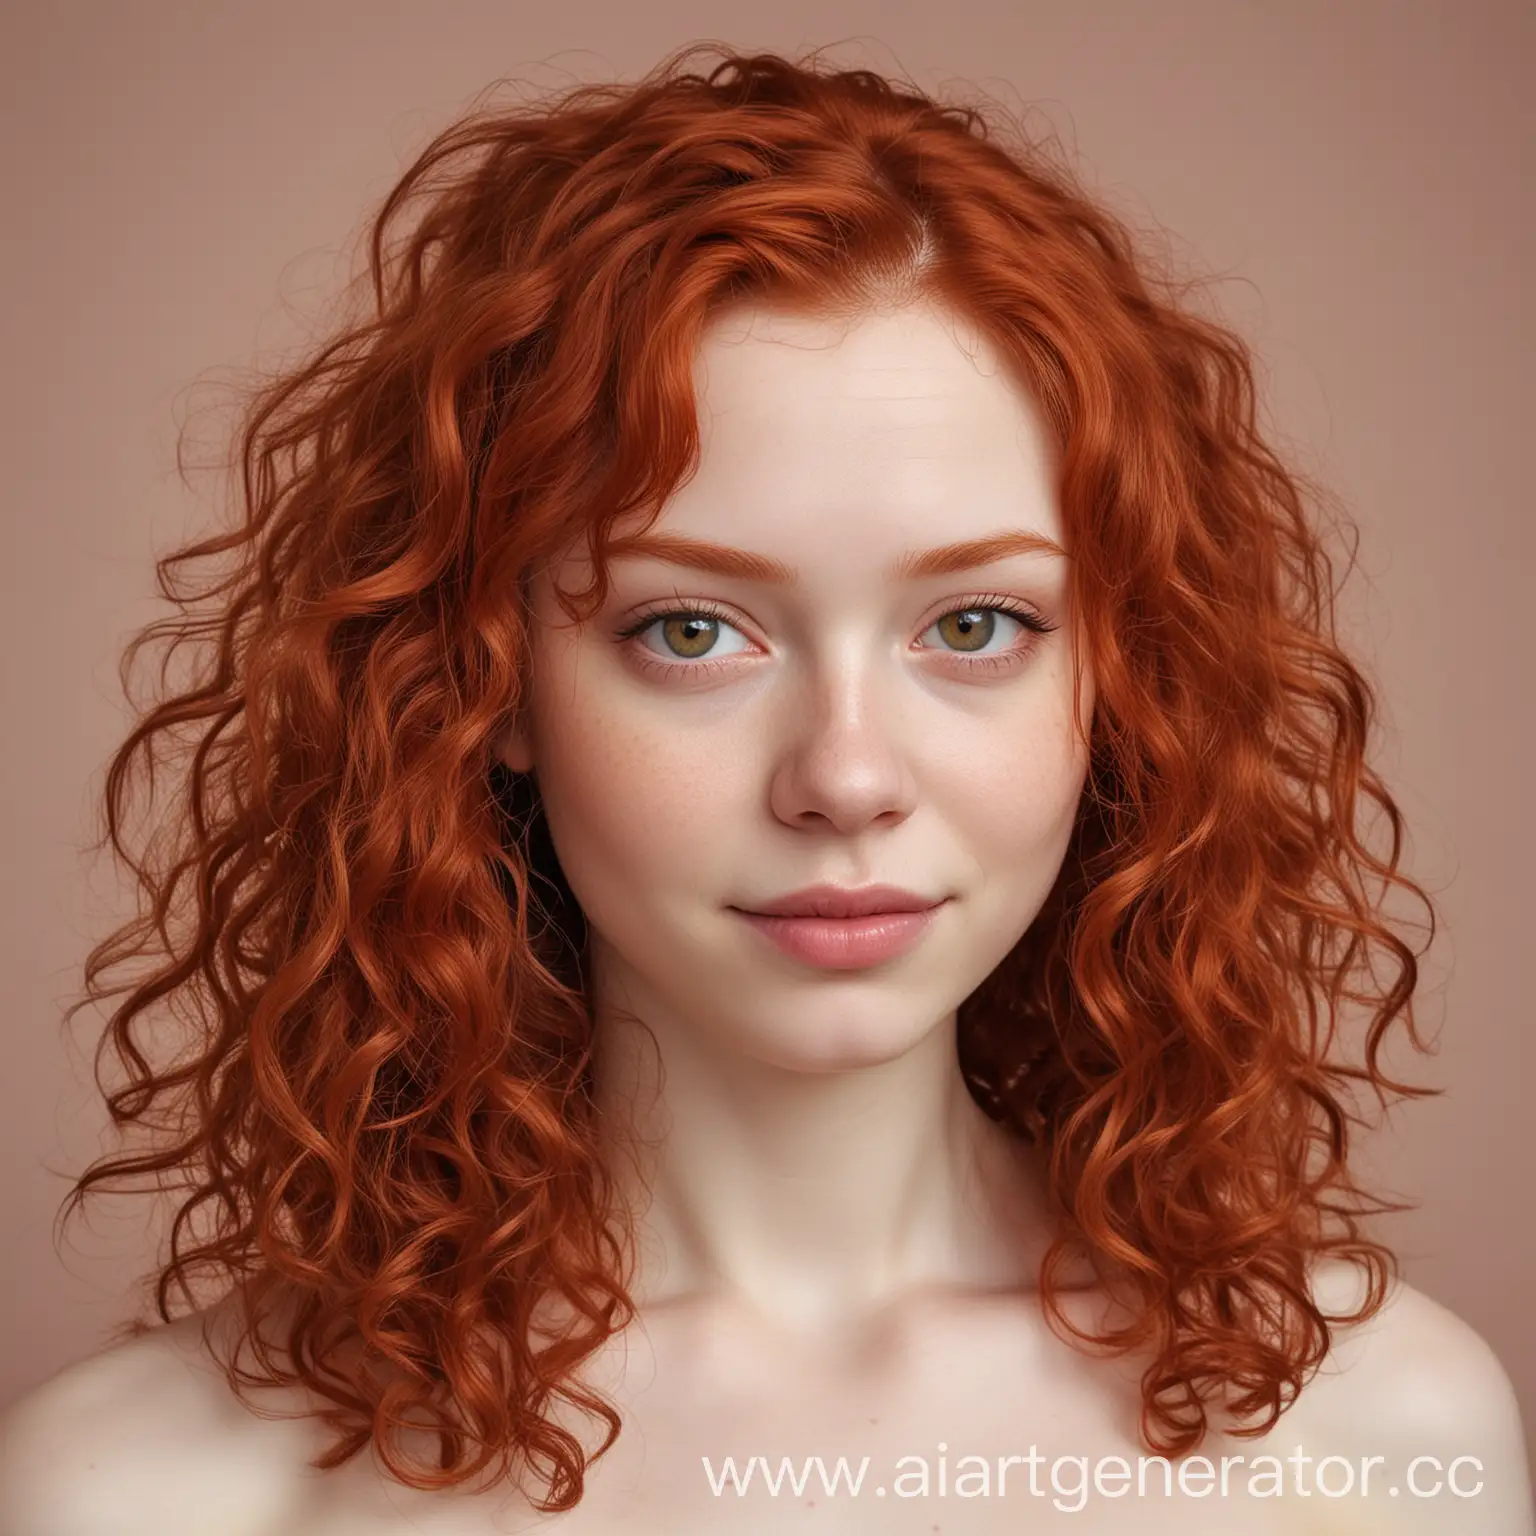 Девушка 17-18 лет. Небрежные, вьющиеся рыжие волосы глубокого красного оттенка, средней длины. Глазной альбинизм. Светлая кожа. Милая улыбка. Стройное телосложение. Грудь второго размера. Рост 160 см